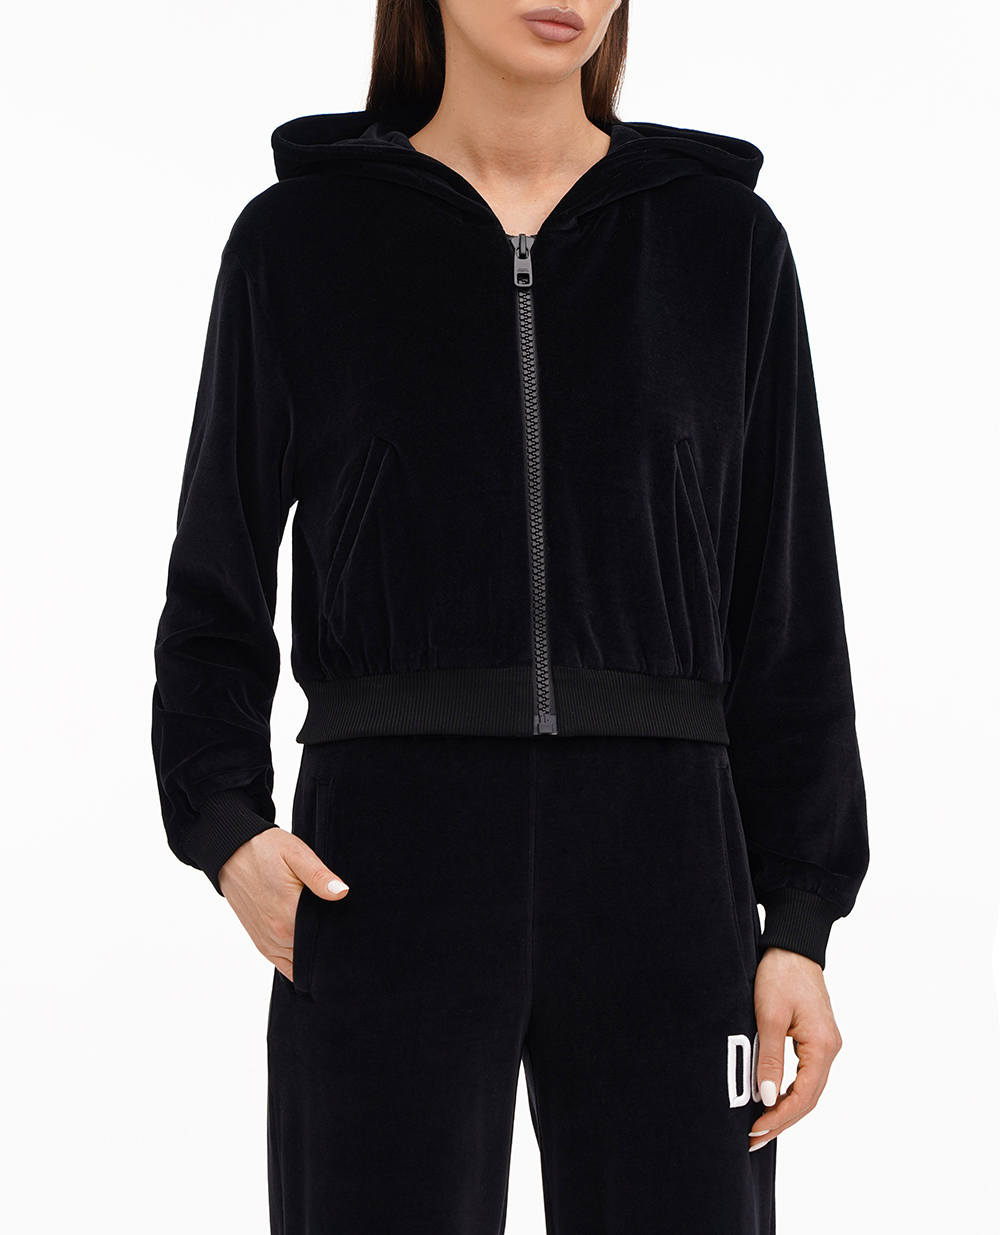 Толстовка DGVIB3 (костюм) Dolce&Gabbana F9R44Z-FUVJH, чорний колір • Купити в інтернет-магазині Kameron